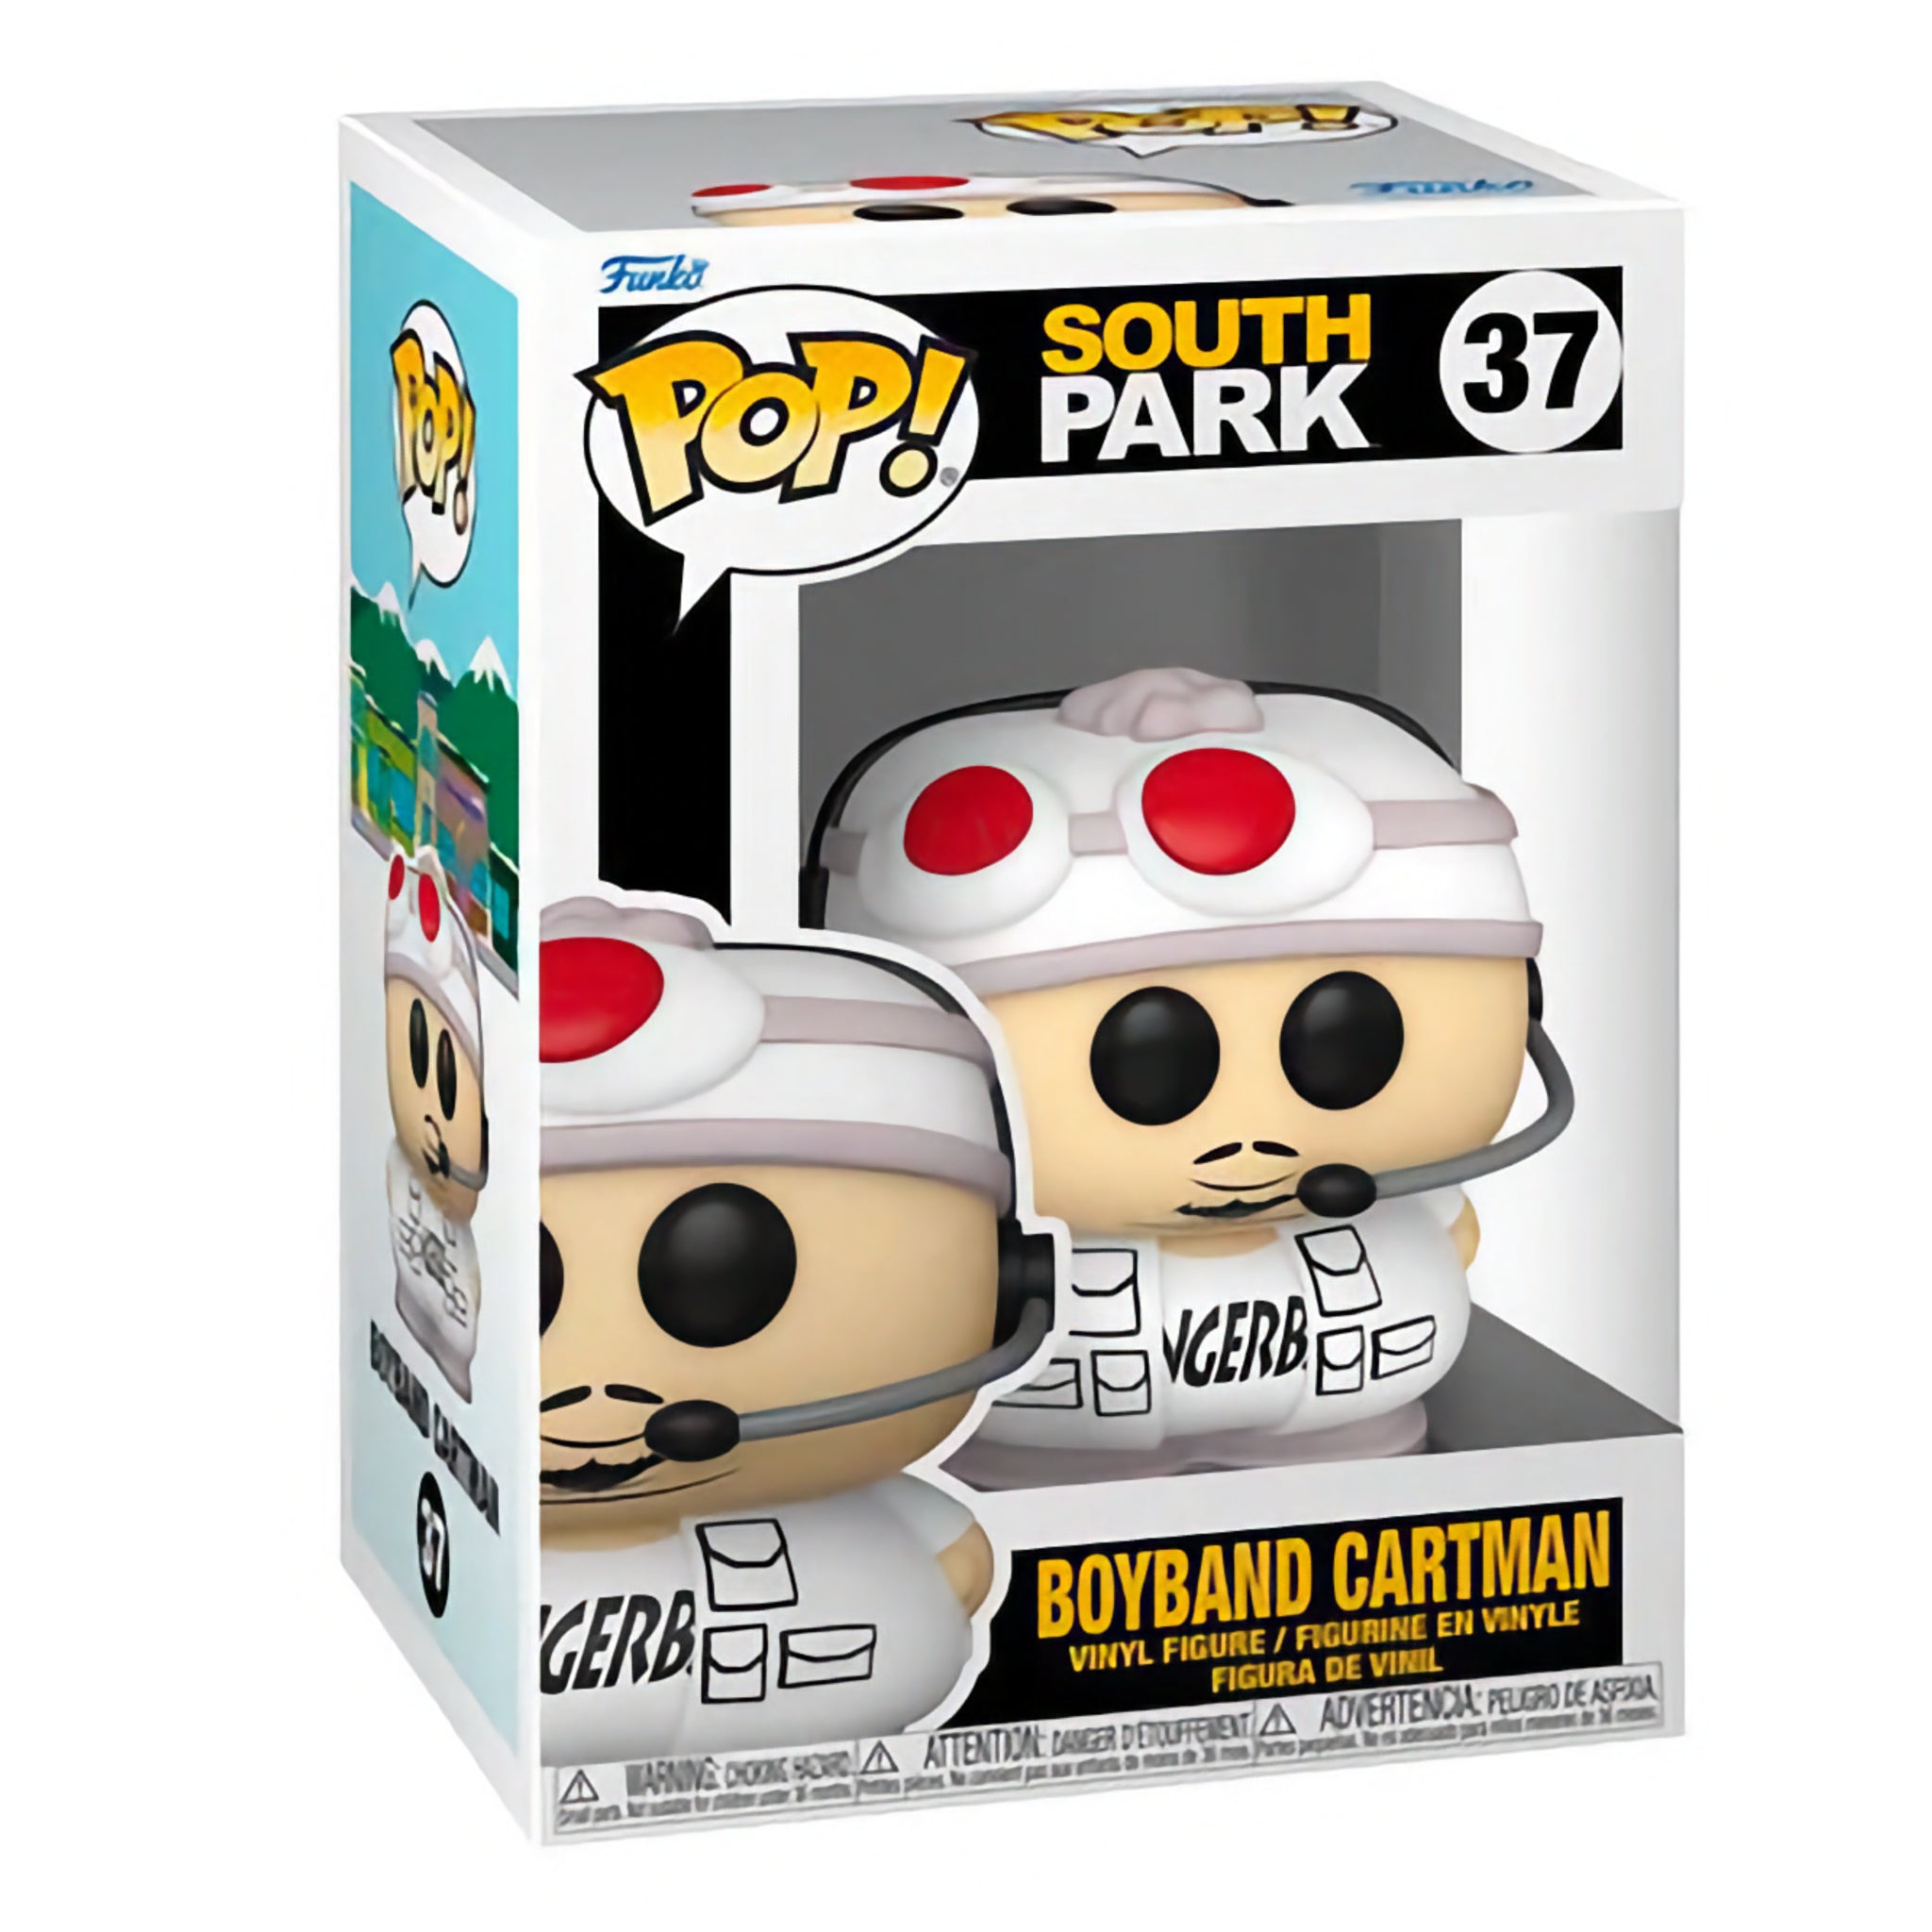 Boyband Cartman Funko Pop!